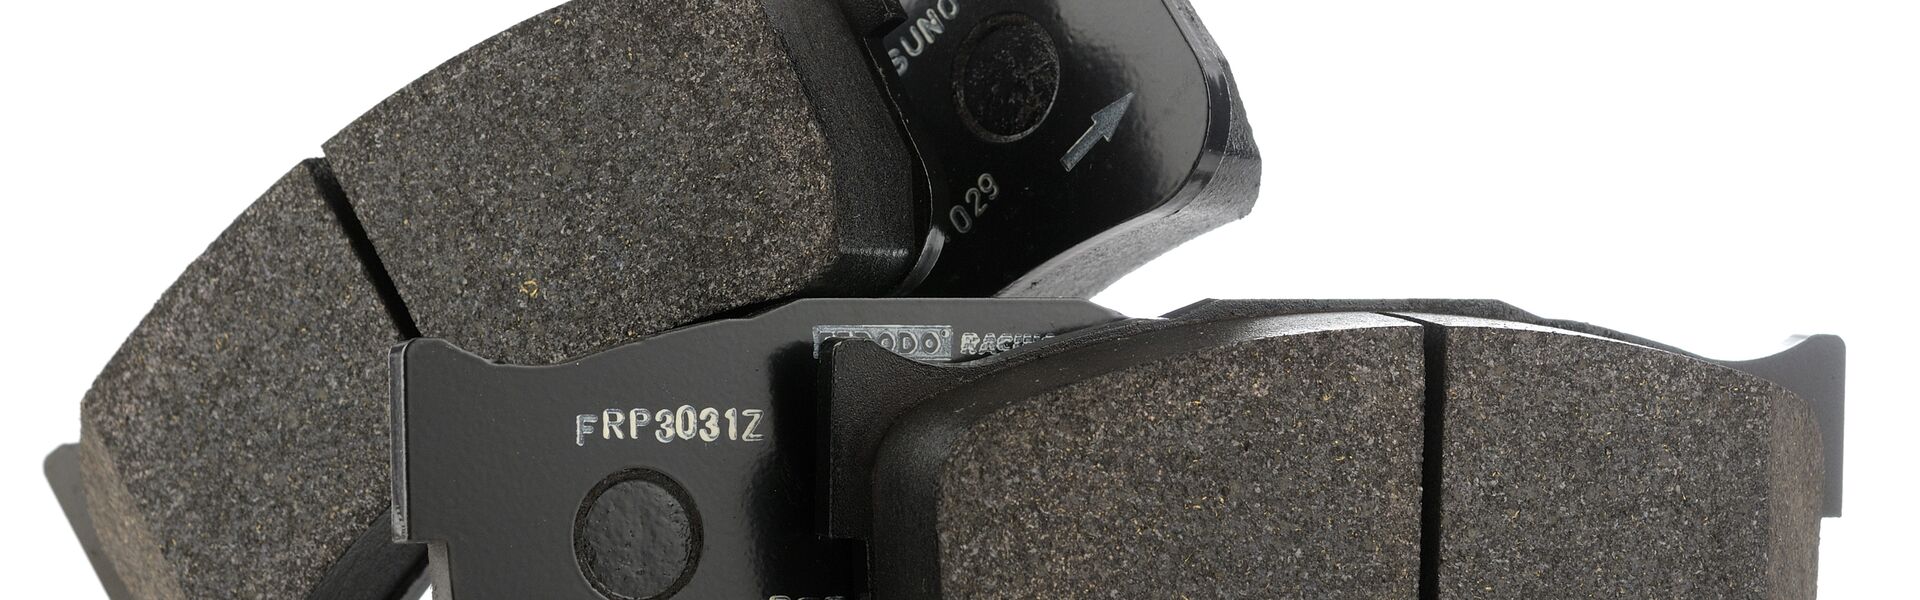 Sada zadních destiček Ferodo DS2500 - náhrada za OEM sériový díl (standartní ocelové brzdy)